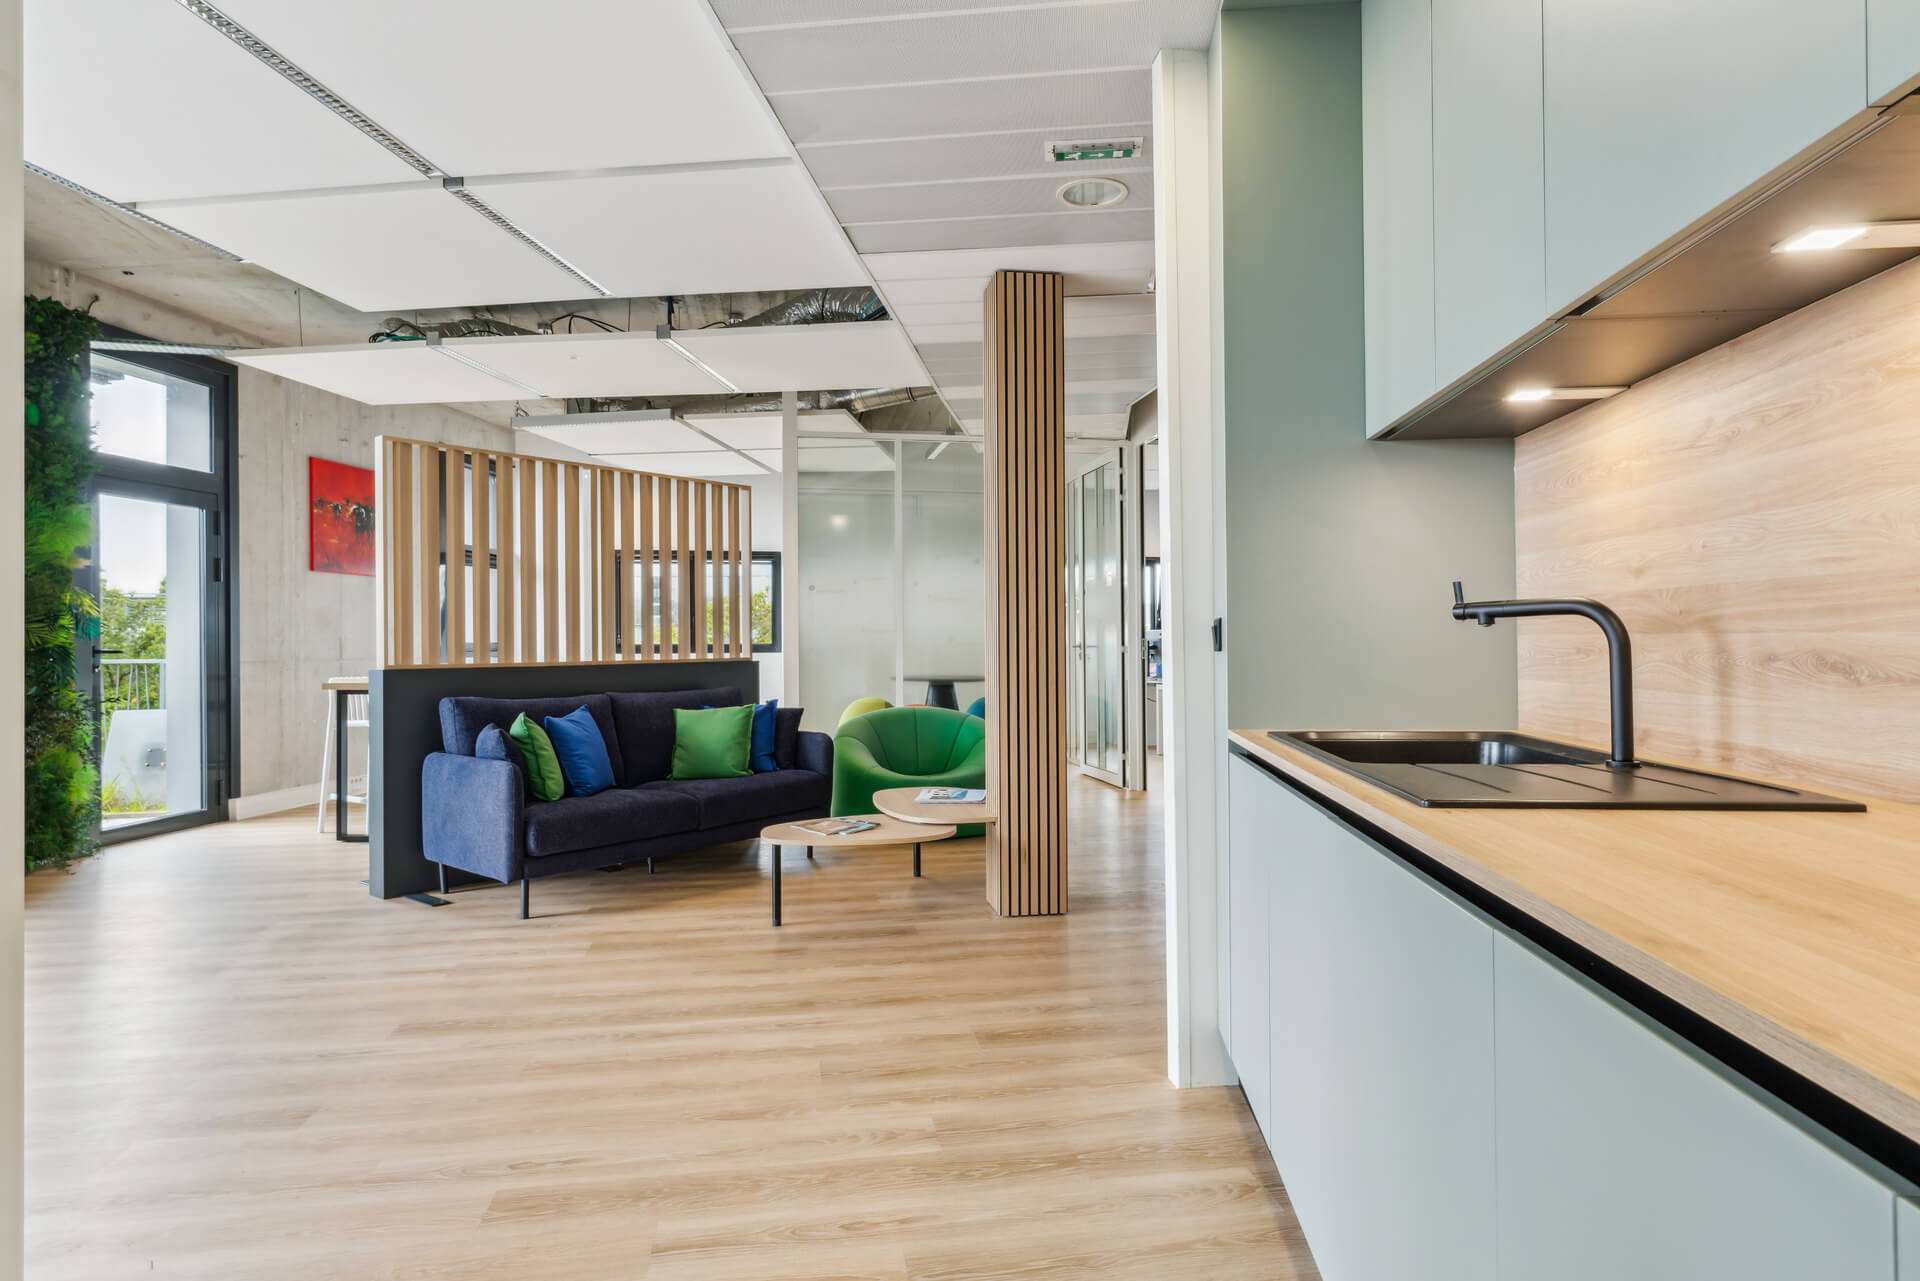 Vue du nouvel espace d'accueil et nouvelle cuisine des bureaux Sofira rénovés par WENES Aménagement